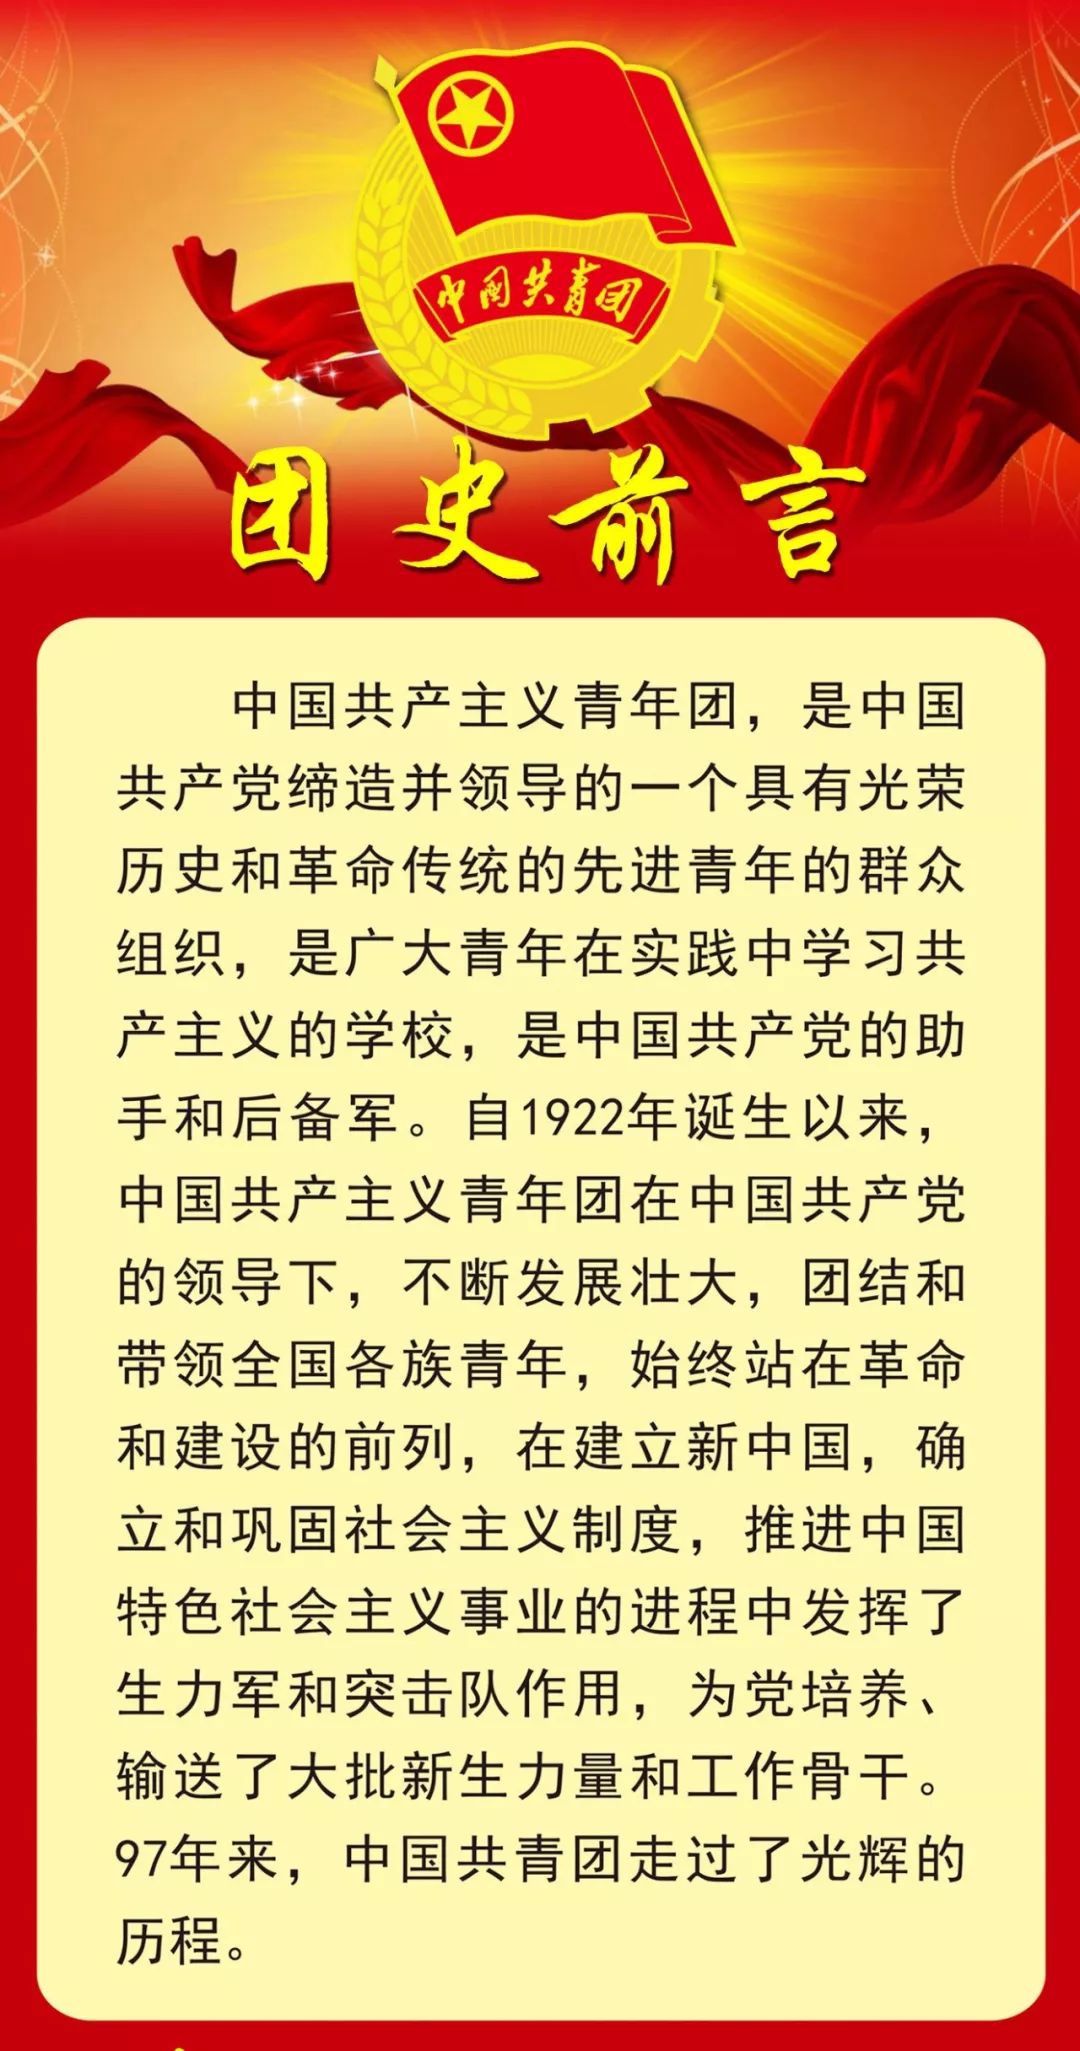 中国共青团团旗